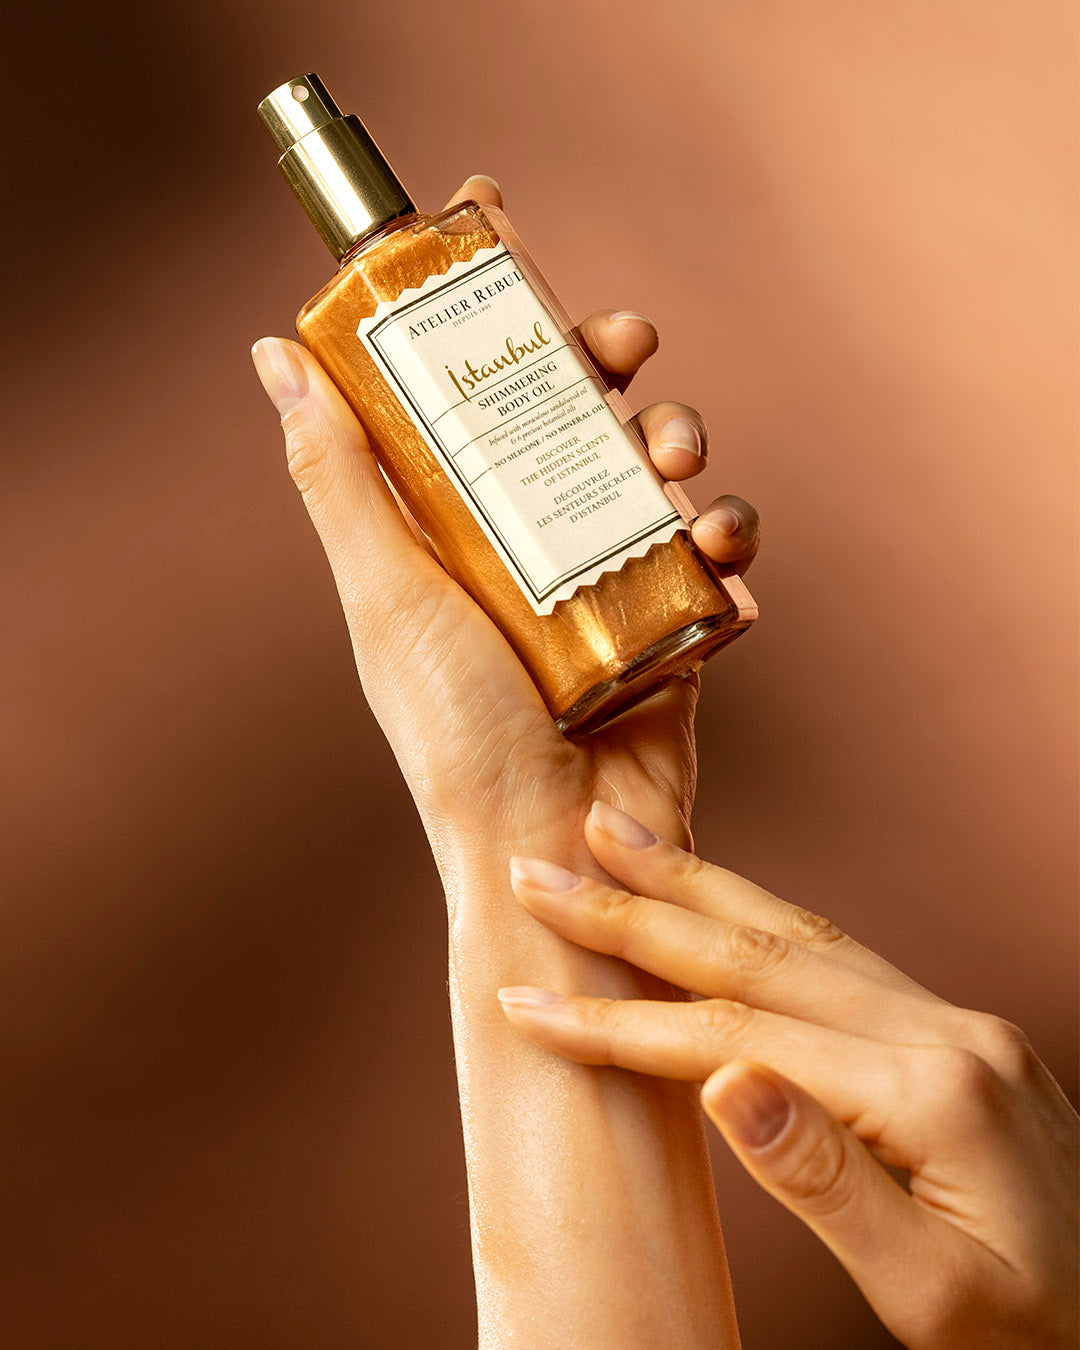 istanbul shimmering oil in einer weiblichen hand auf orange-braunem hintergrund.